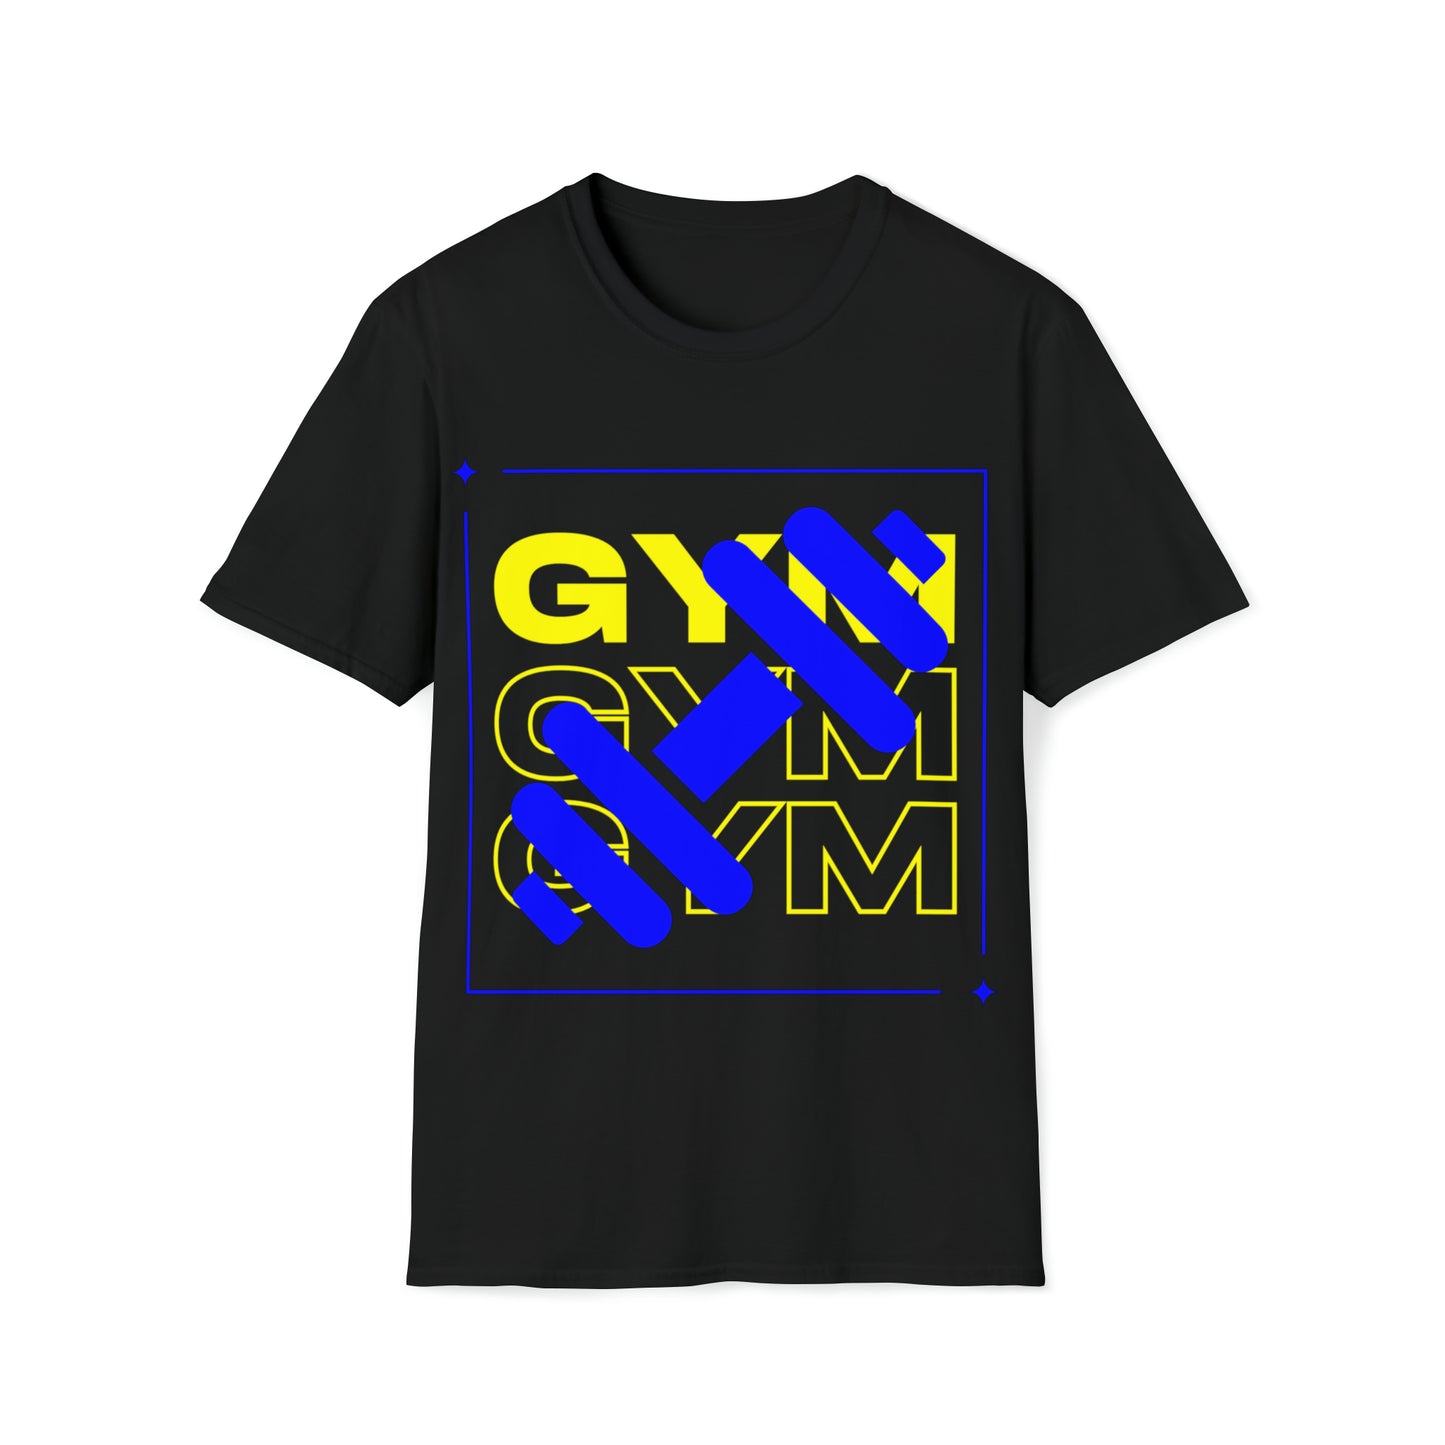 GYM GYM GYM T-Shirt